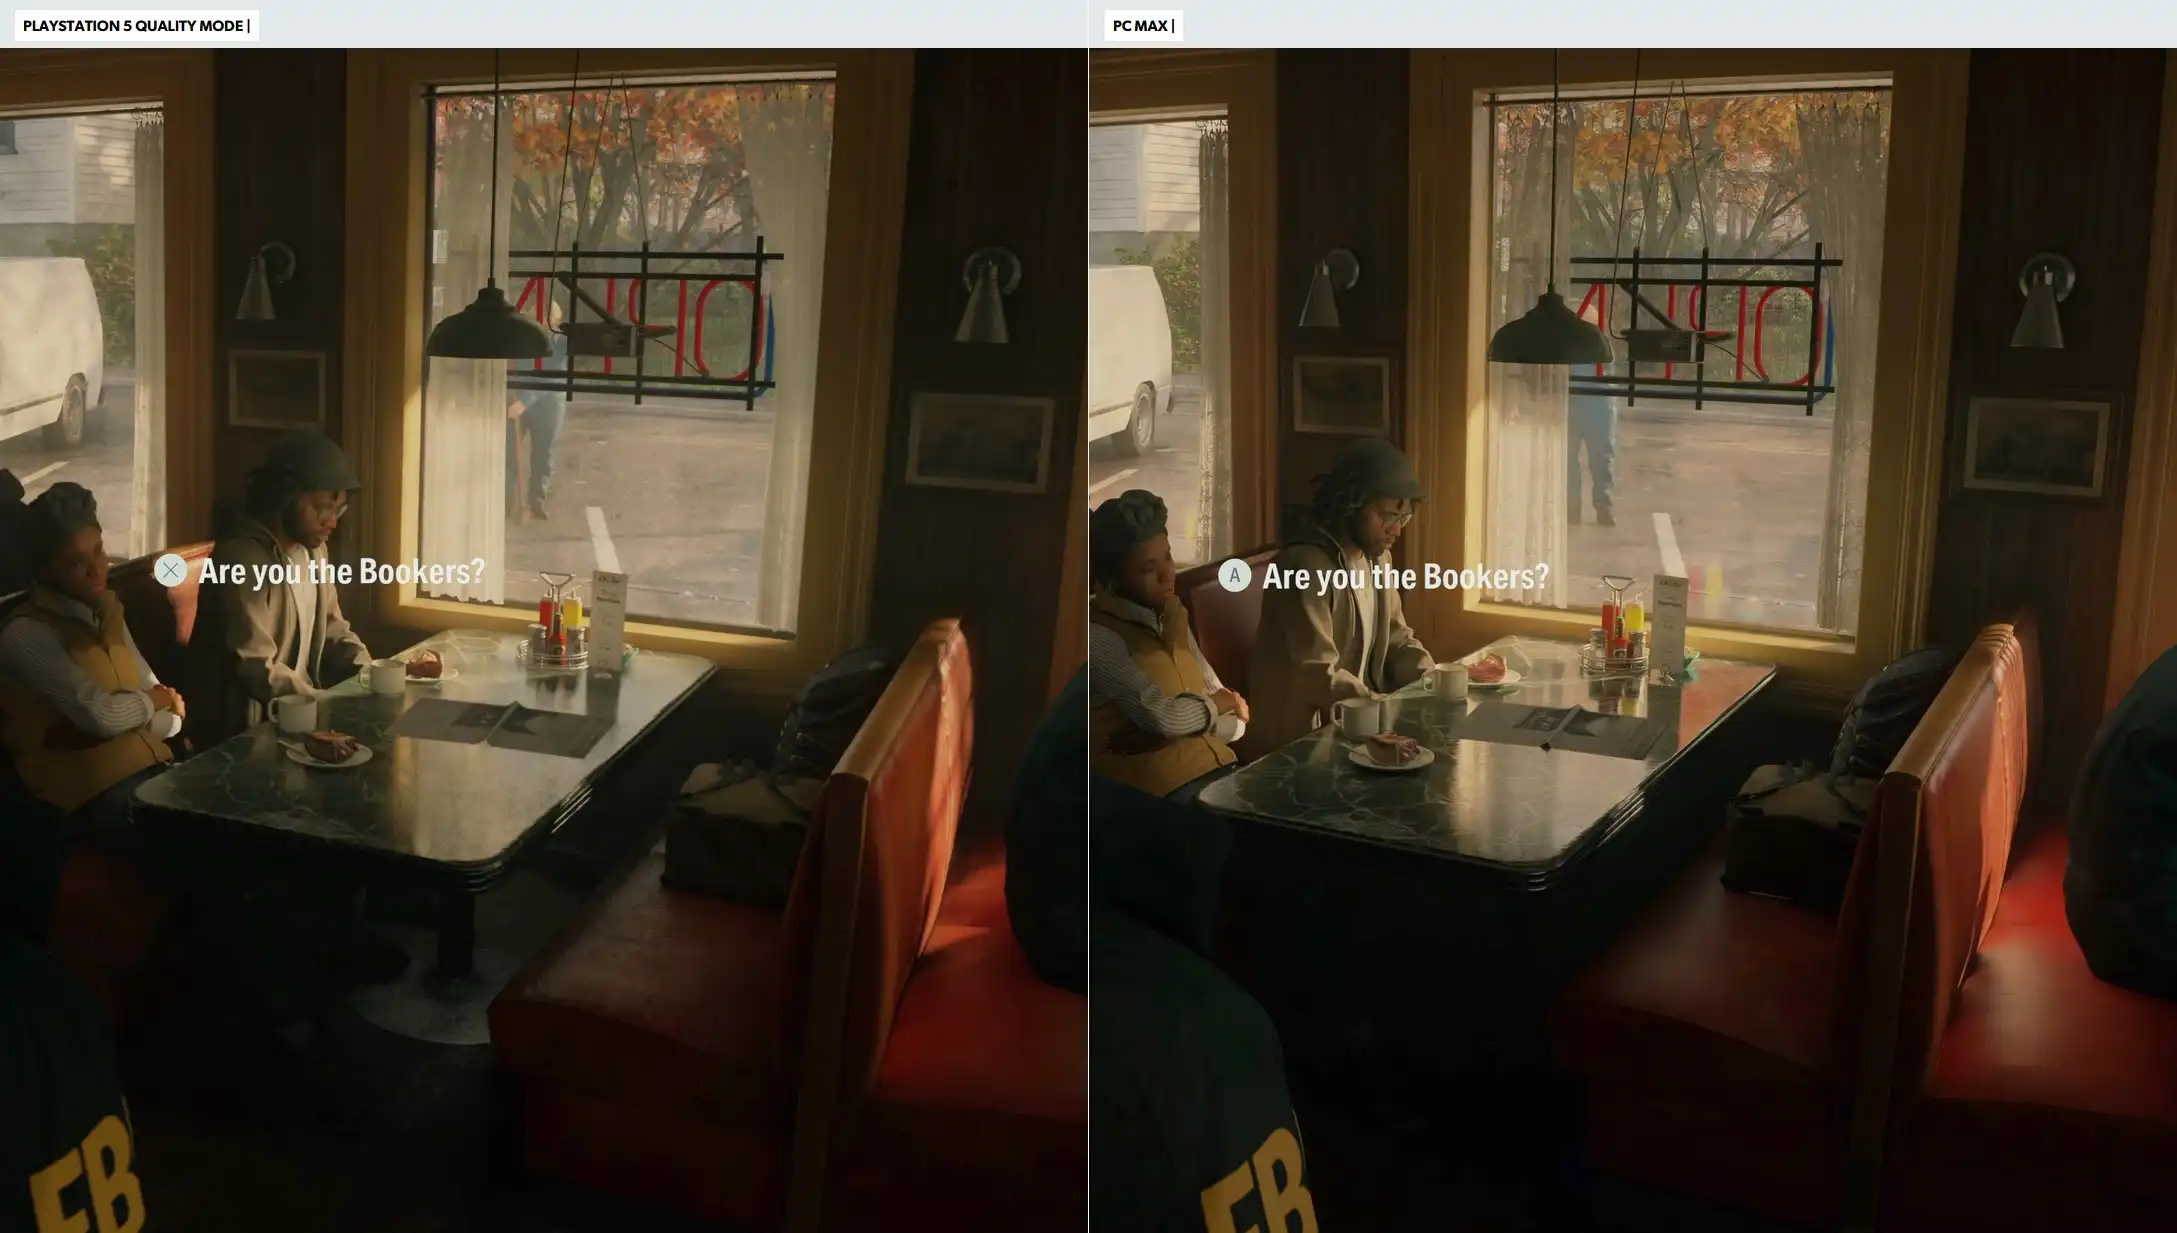 Comparaison des versions PC et PS5 du jeu Alan Wake 2